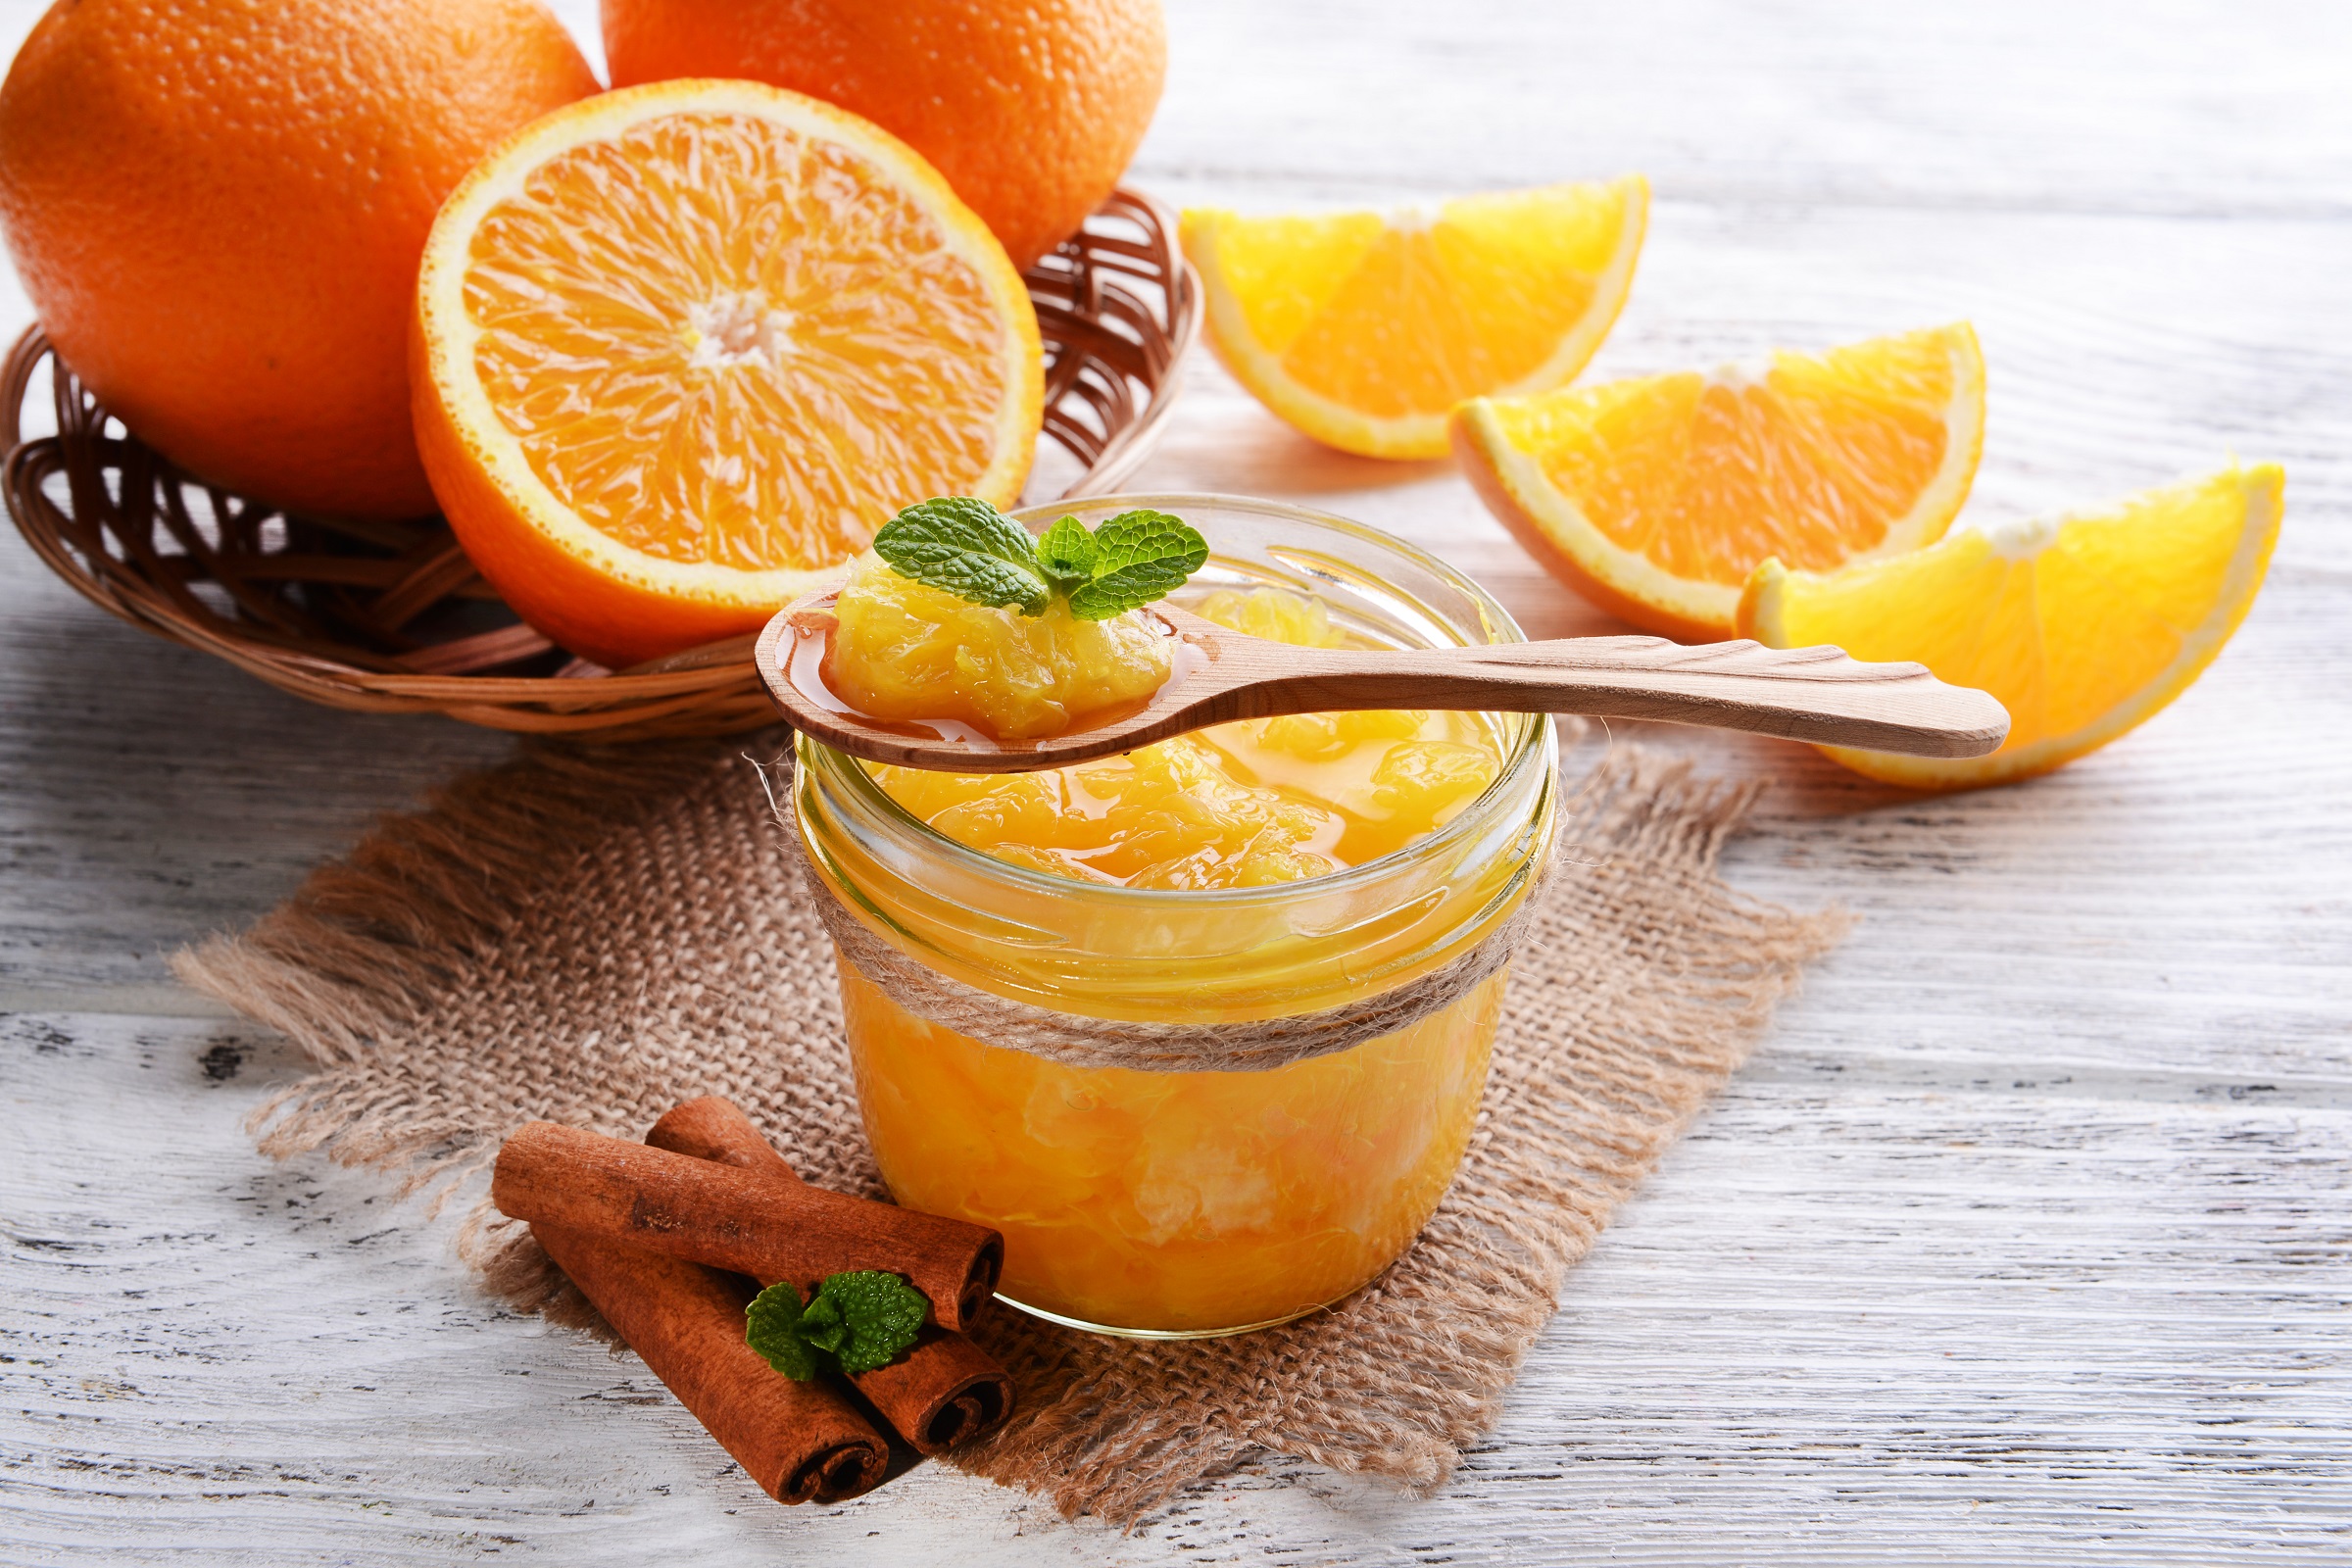 Джем из апельсинов: как приготовить вкусный апельсиновый конфитюр с цедрой, без кожуры, с различными добавками